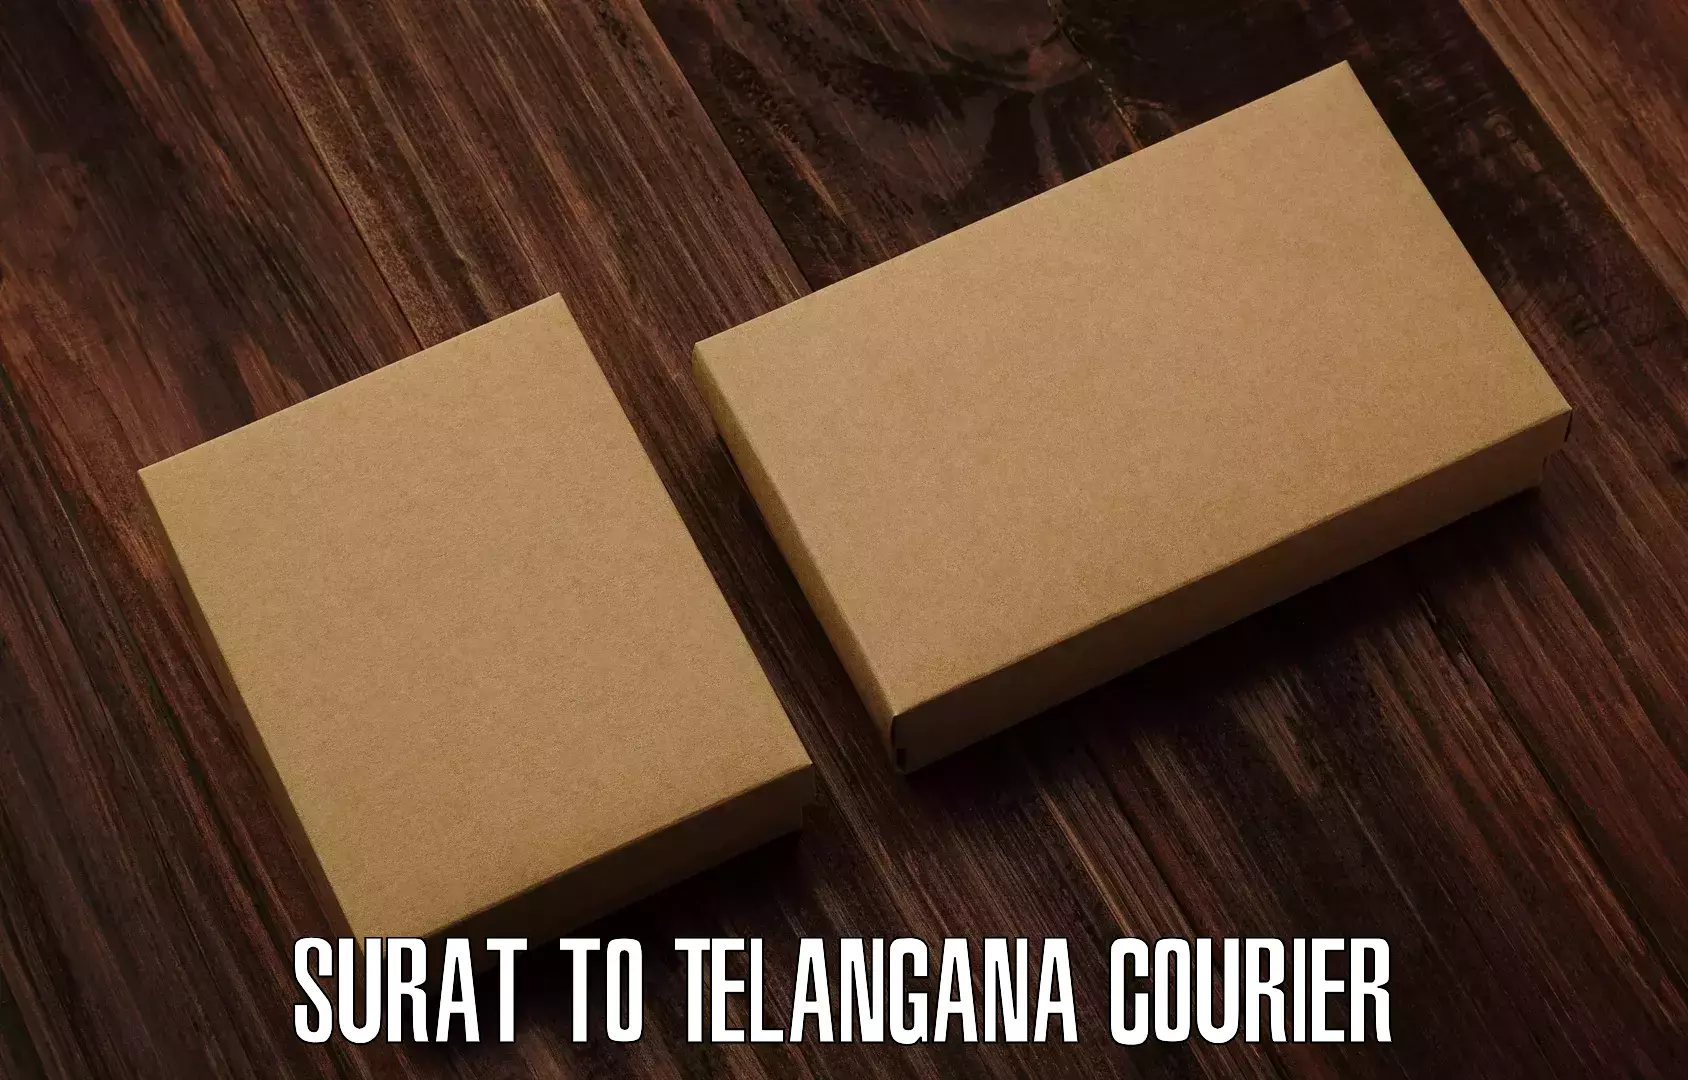 Seamless shipping service Surat to Tiryani